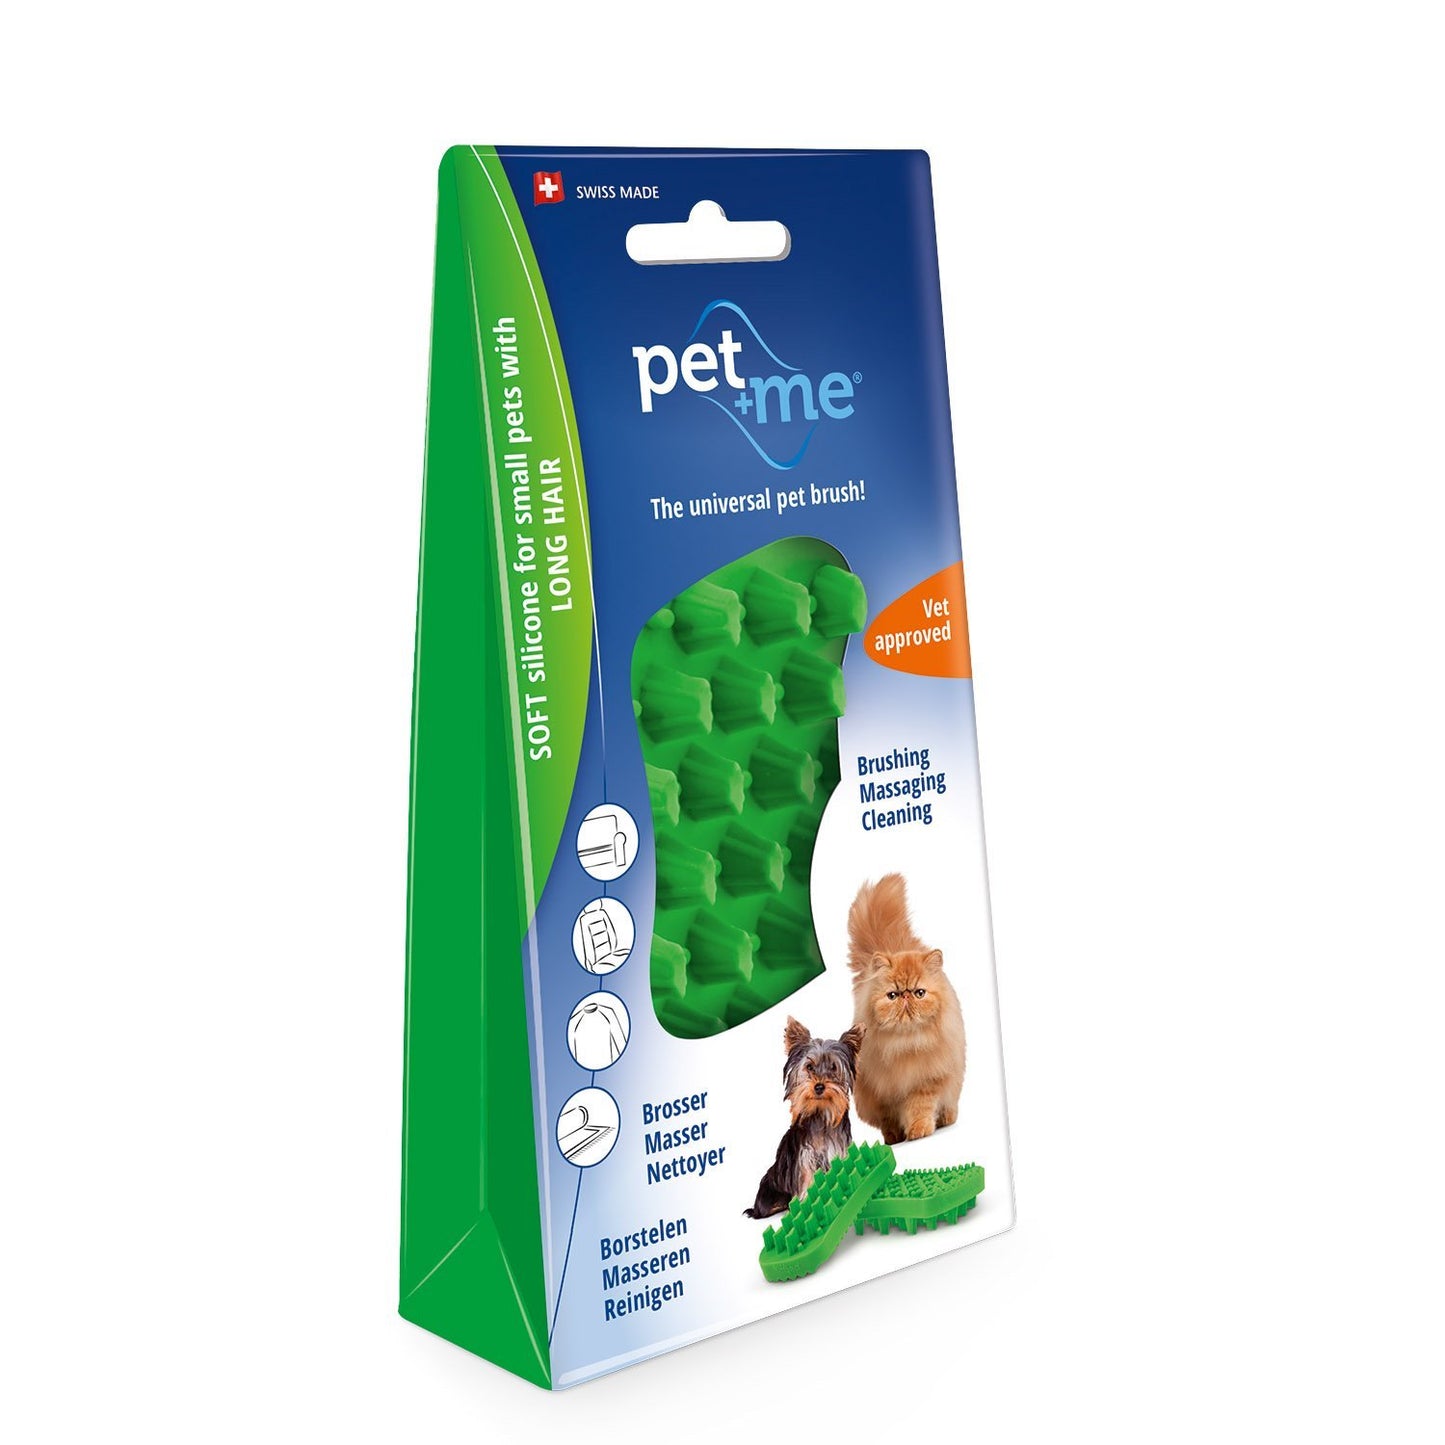 Pet + Me Silicone Brush - Woonona Petfood & Produce